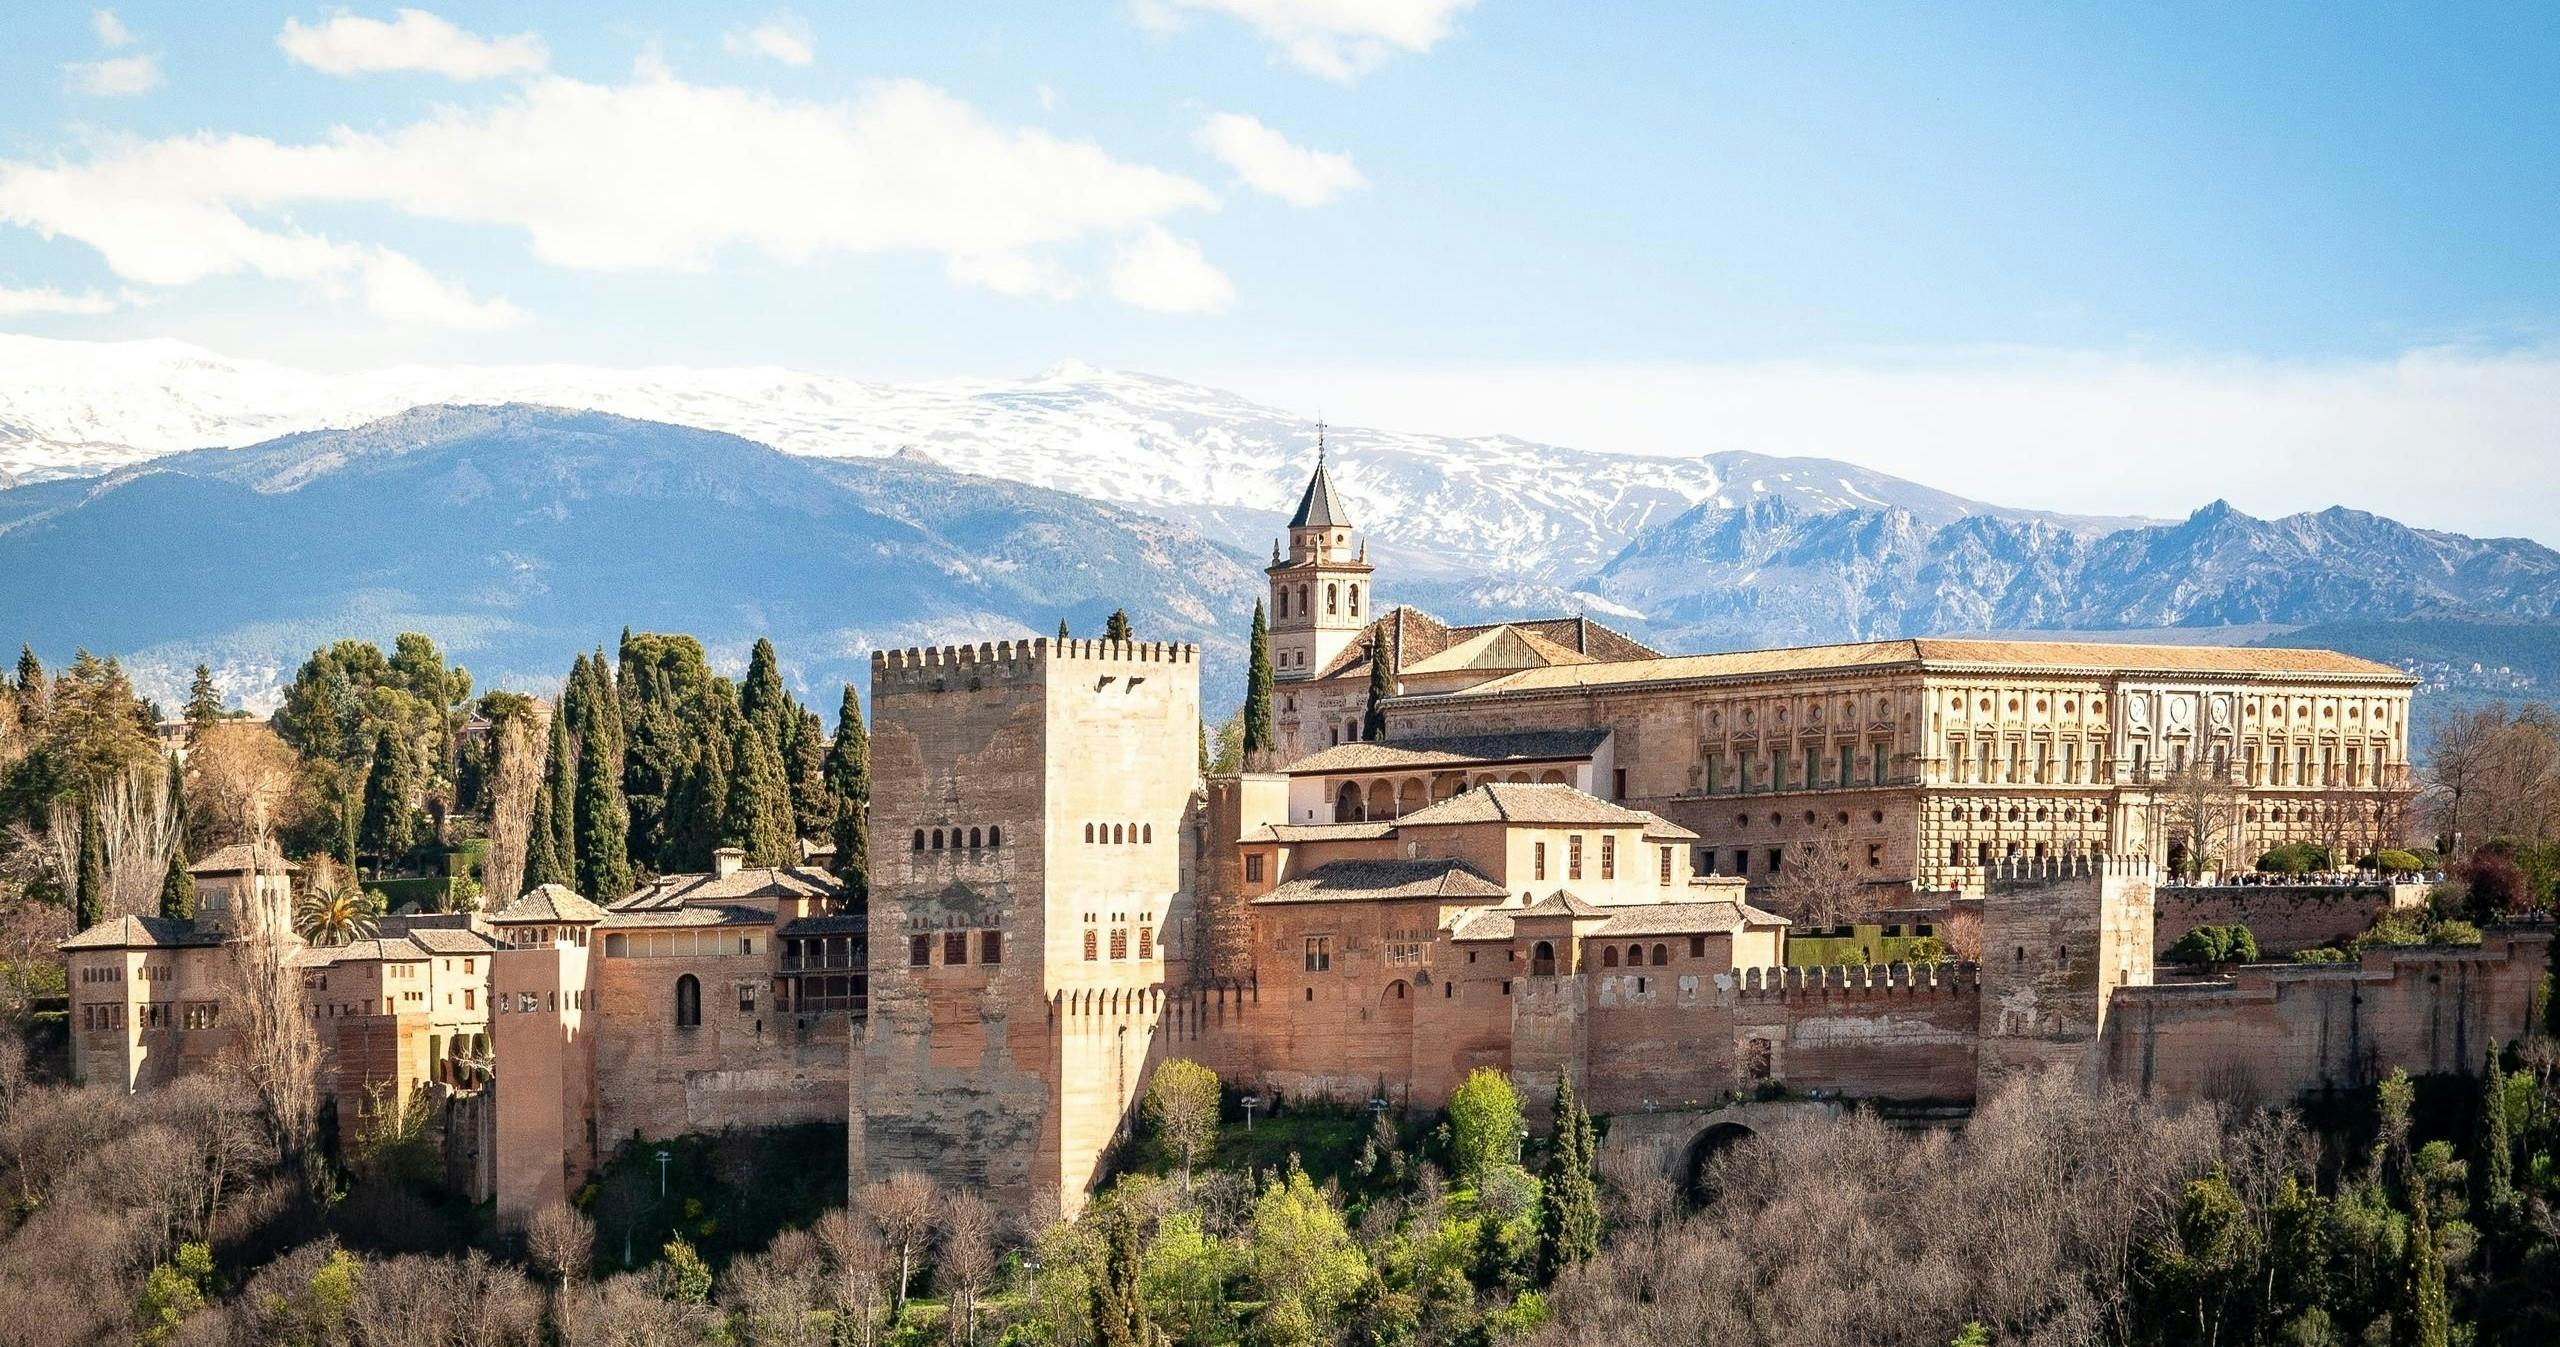 Alhambra-Tickets und Kleingruppentour